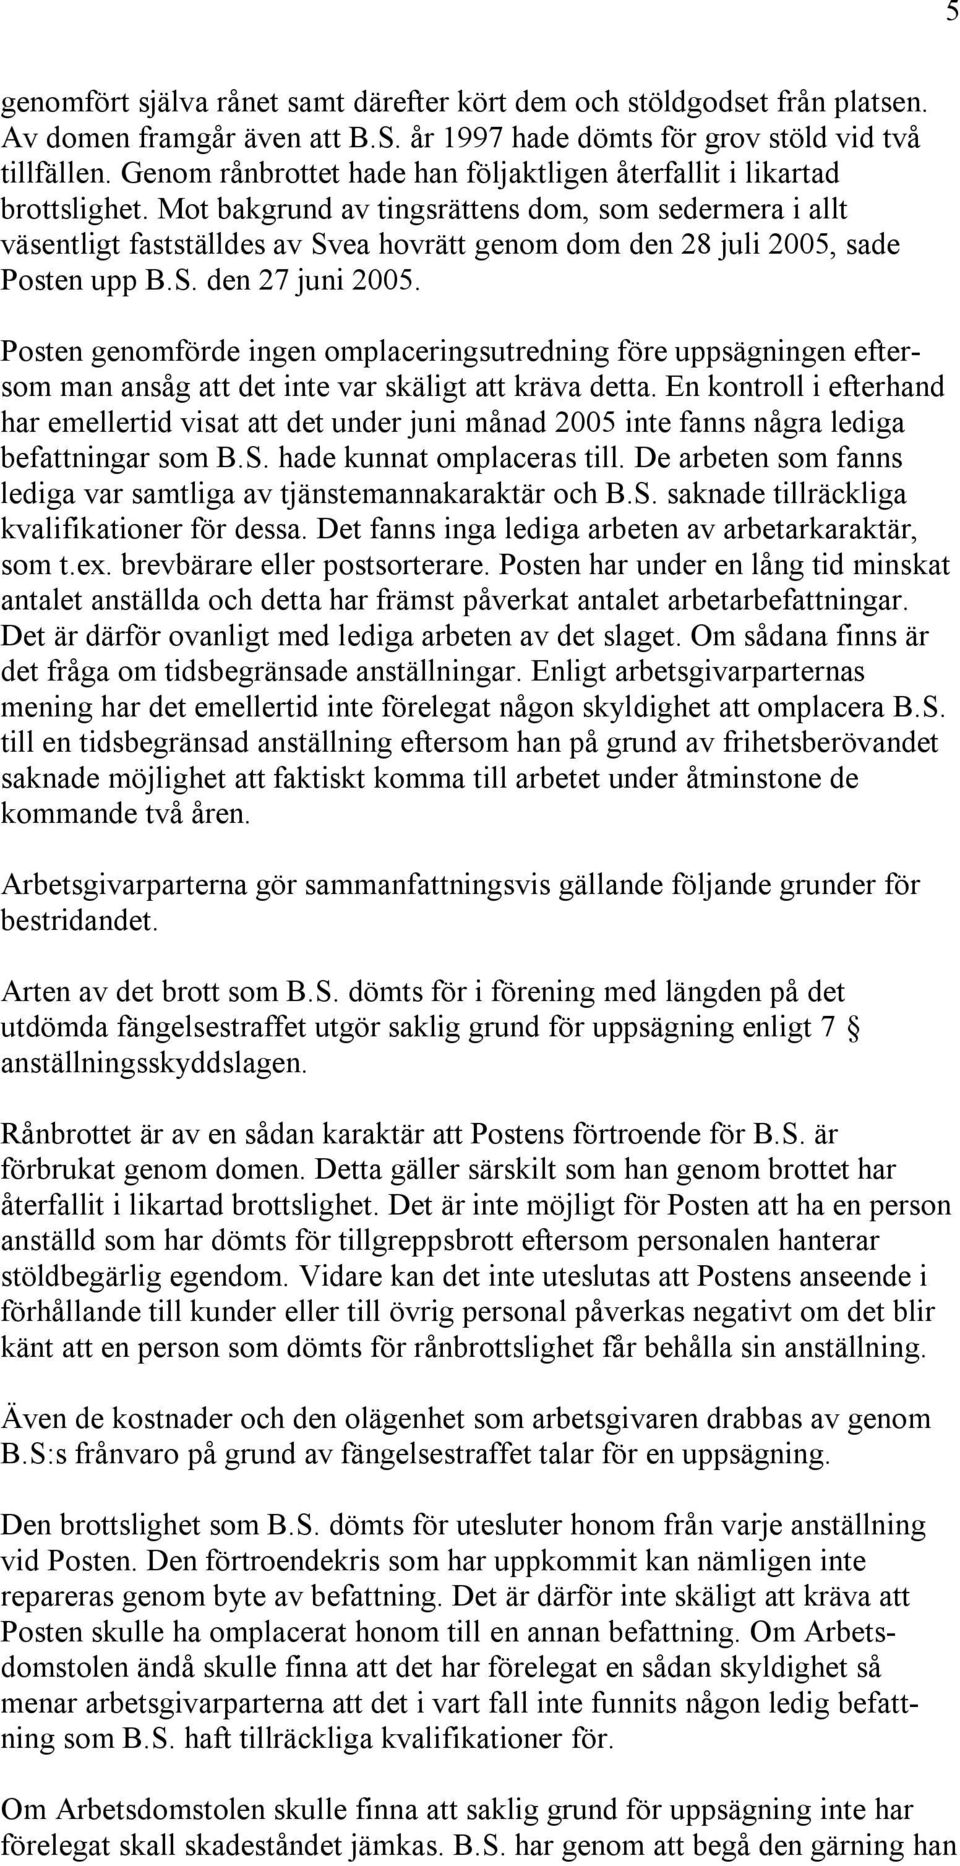 Mot bakgrund av tingsrättens dom, som sedermera i allt väsentligt fastställdes av Svea hovrätt genom dom den 28 juli 2005, sade Posten upp B.S. den 27 juni 2005.